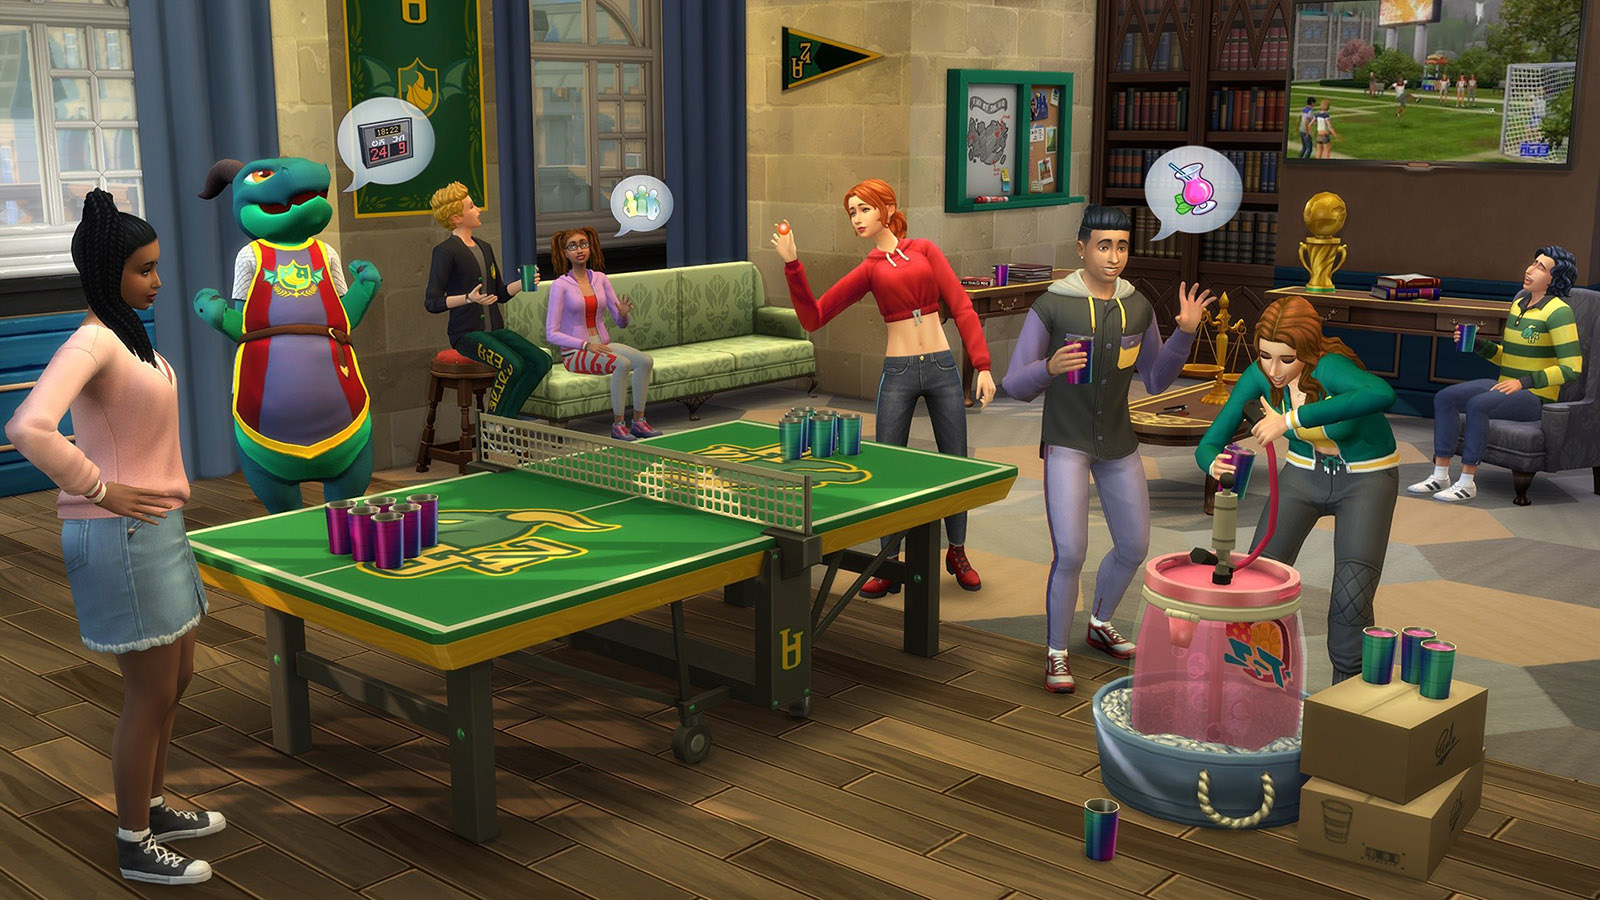 Фигура в Sims3 - Форум, посвященный играм The Sims 4,3,2,1